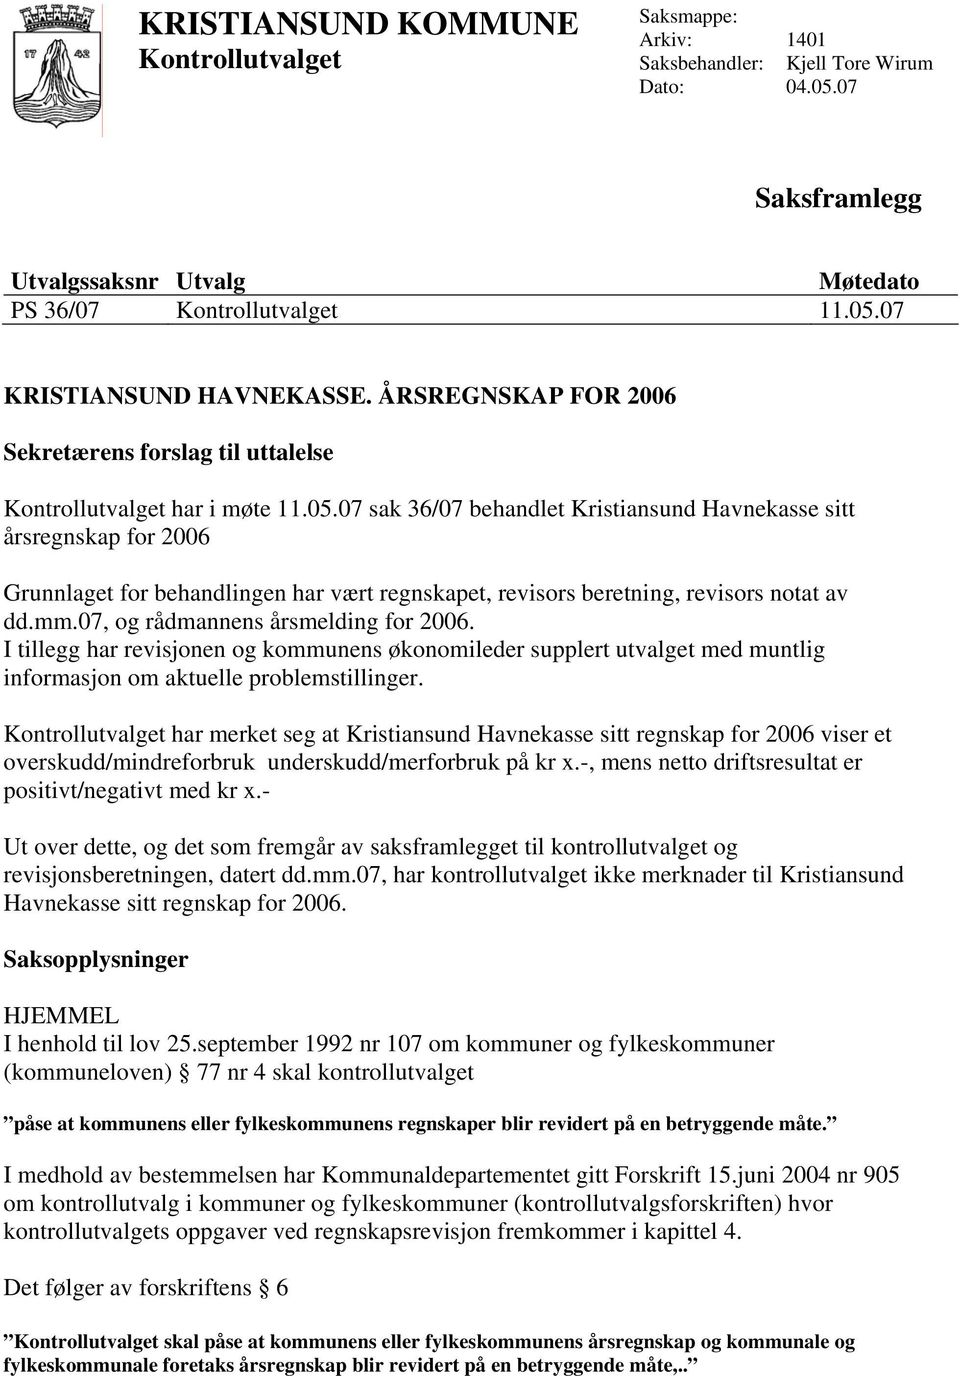 har merket seg at Kristiansund Havnekasse sitt regnskap for 2006 viser et overskudd/mindreforbruk underskudd/merforbruk på kr x.-, mens netto driftsresultat er positivt/negativt med kr x.